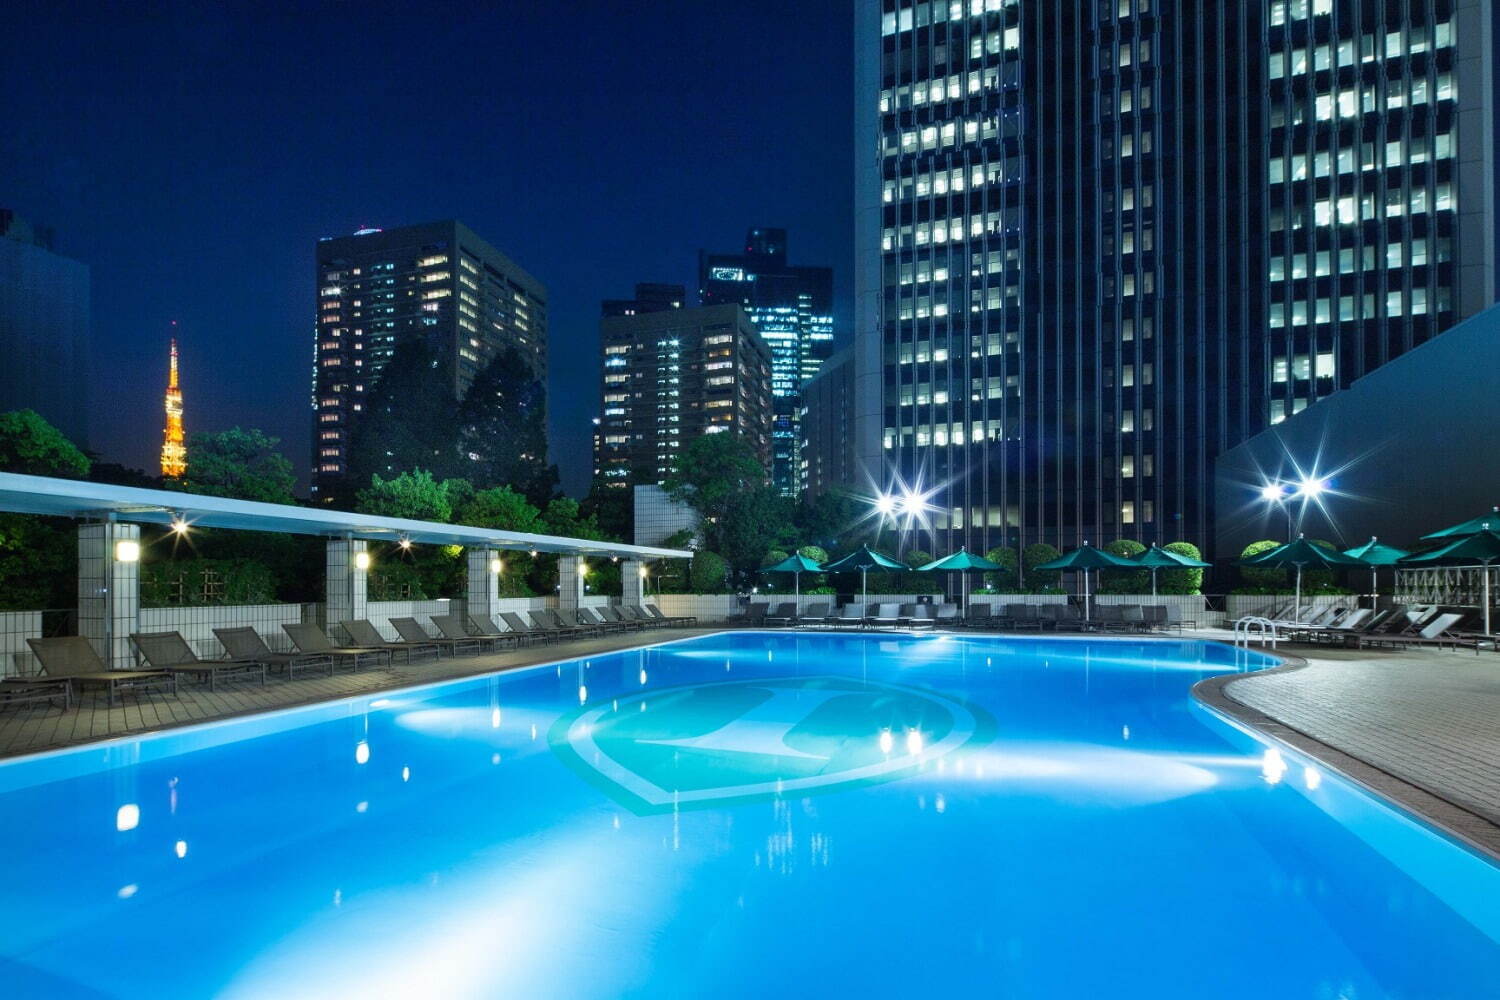 ANAインターコンチネンタルホテル東京「ガーデンプール」